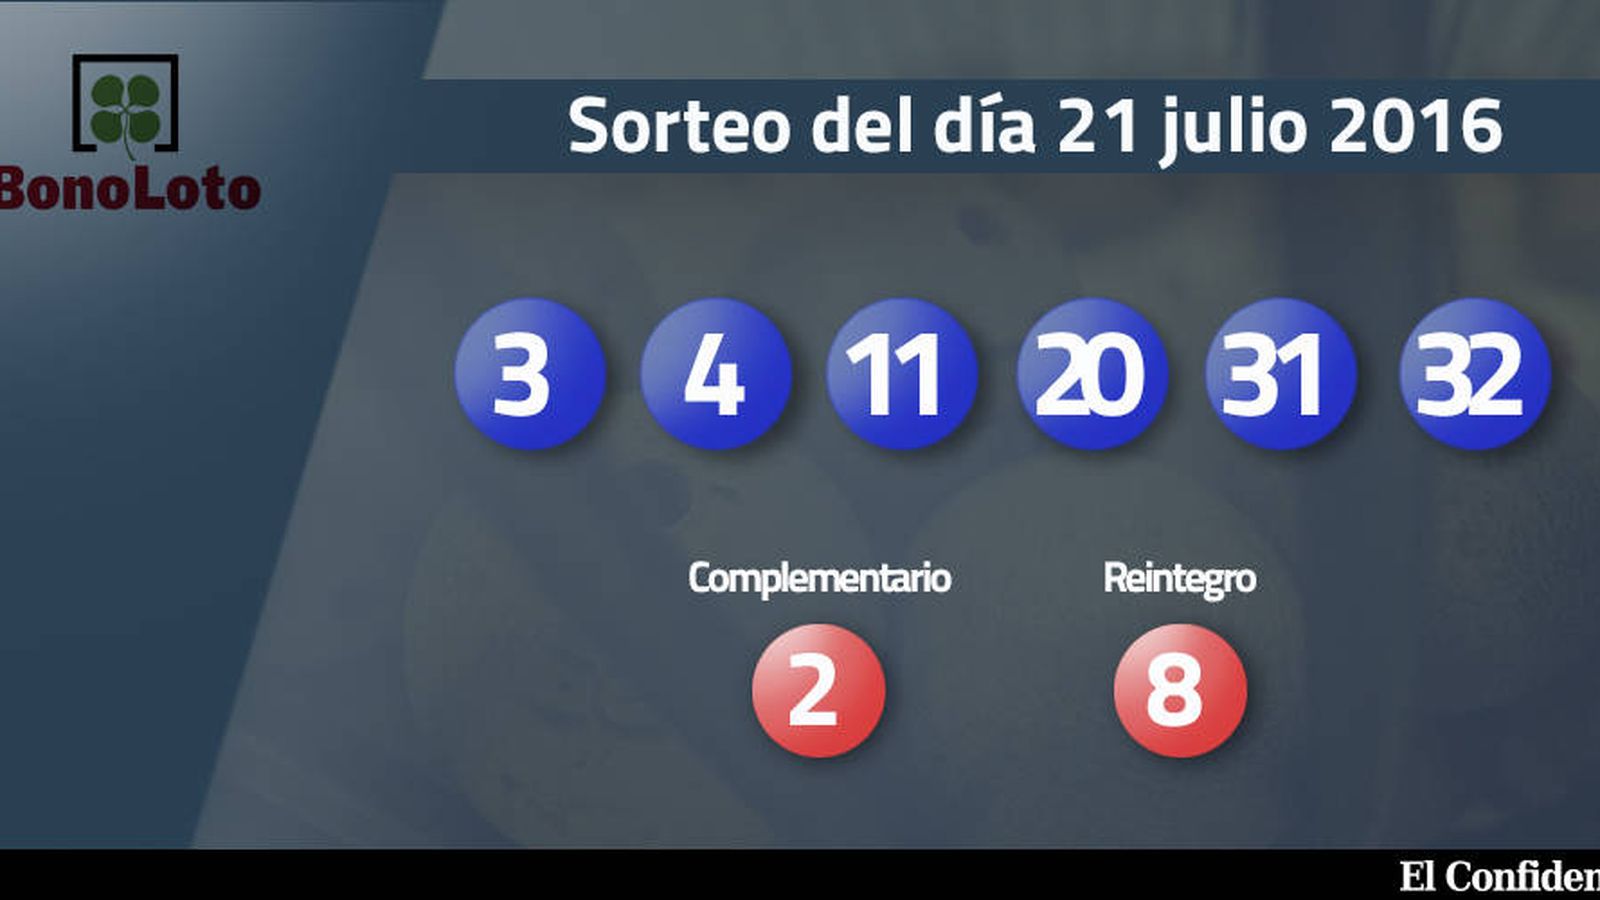 Foto: Resultados del sorteo de la Bonoloto del 21 julio 2016 (EC)